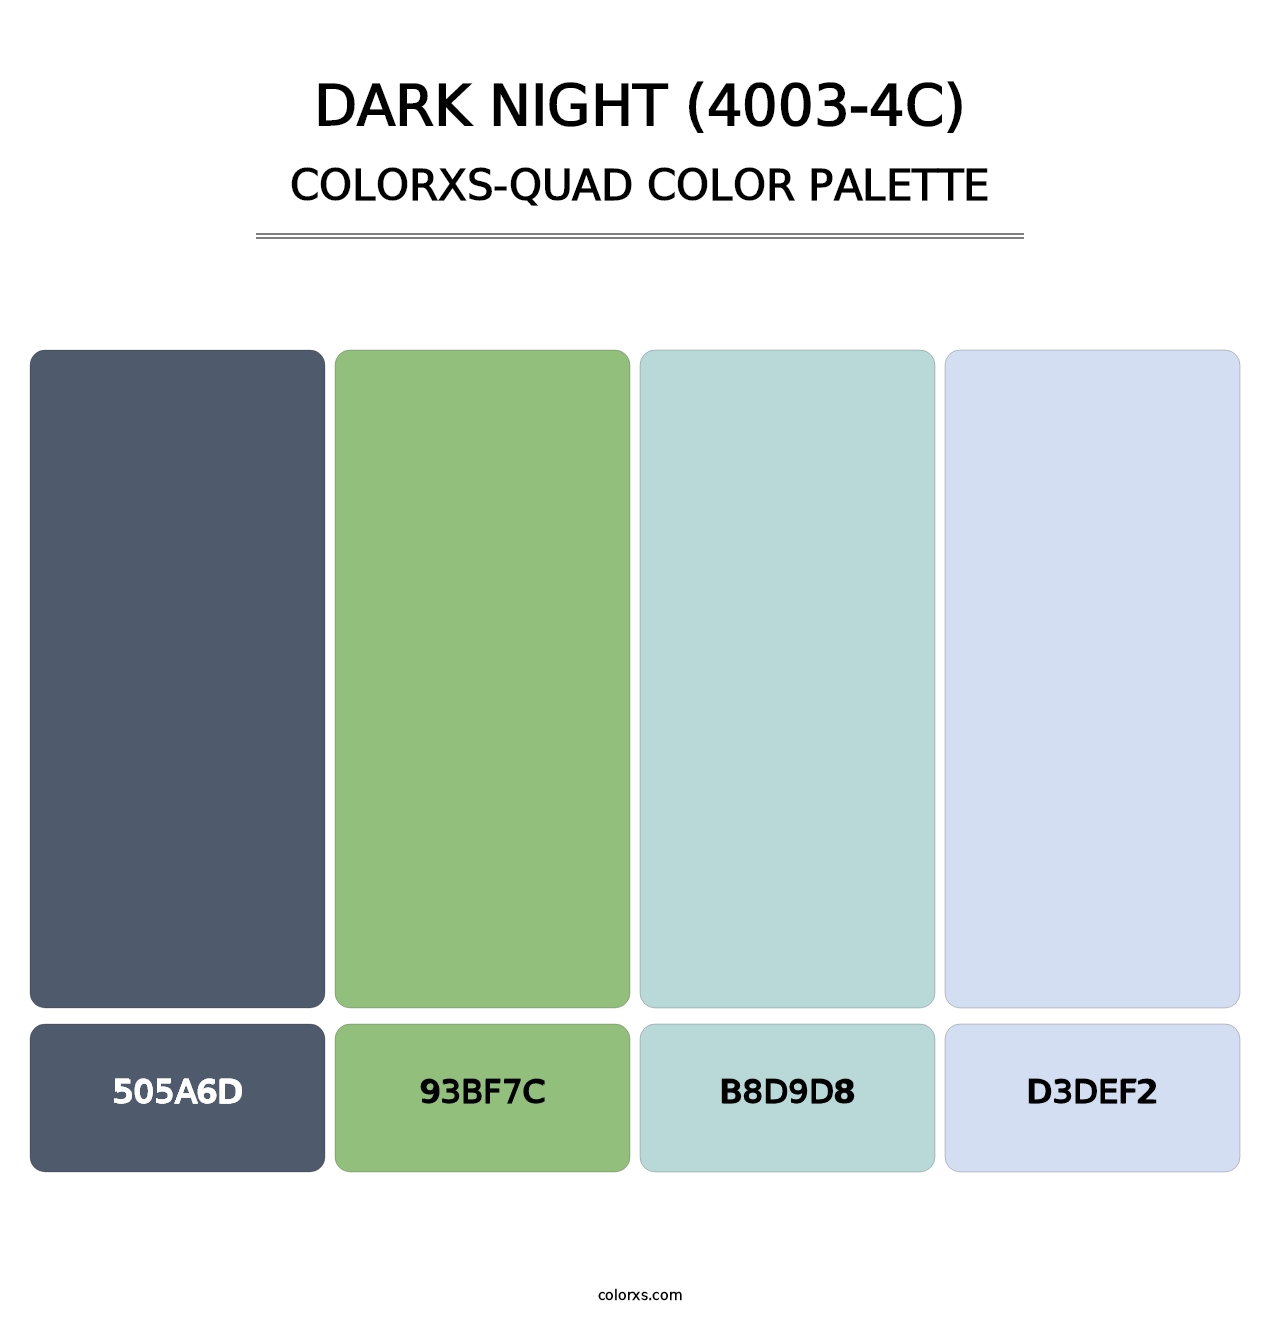 Dark Night (4003-4C) - Colorxs Quad Palette